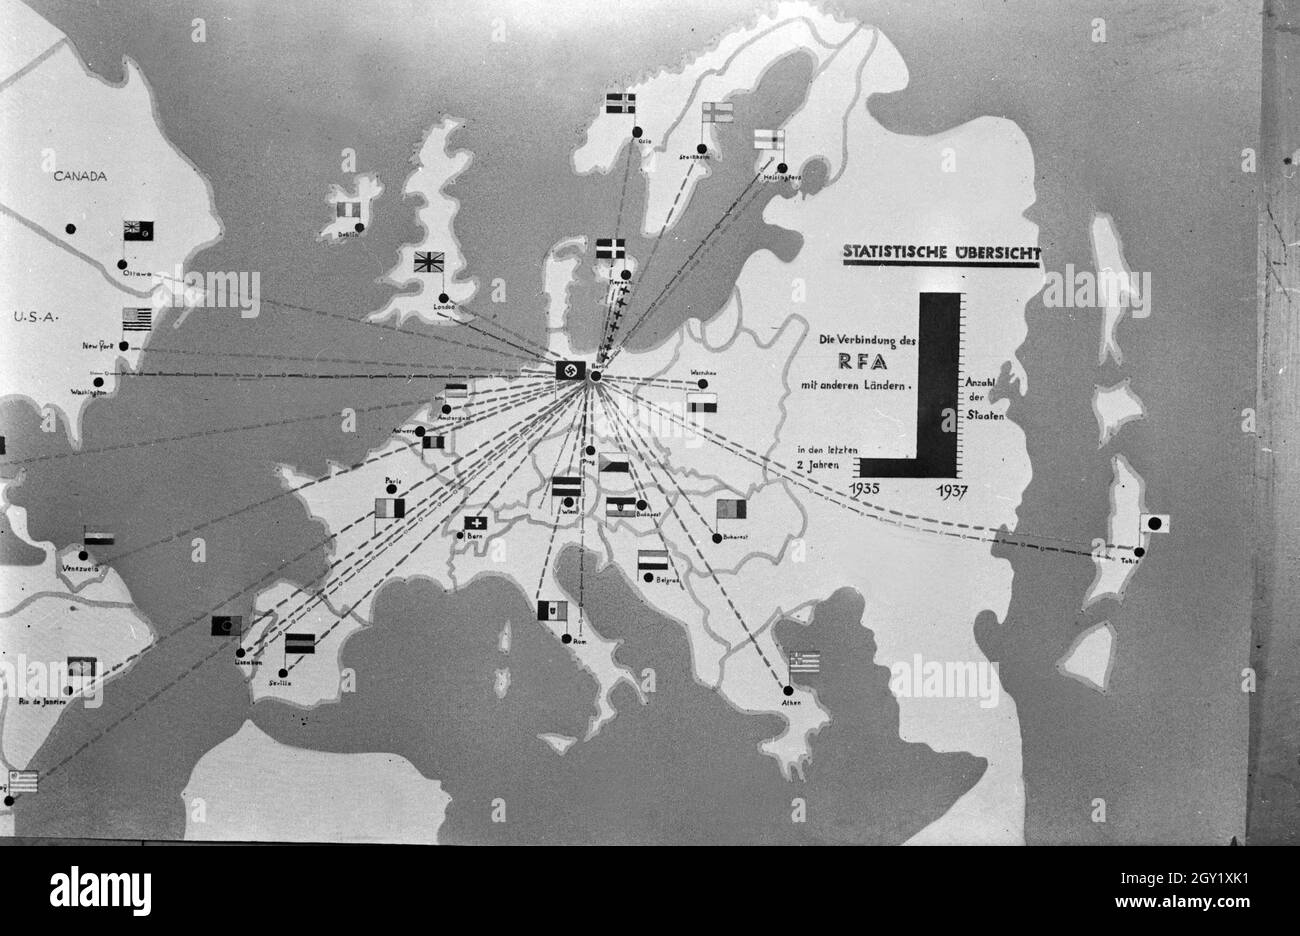 Reproduktion einer Übersicht 'Die Verbindung des RFA mit anderen Ländern', Deutschland 1930er Jahre. Reproduktion von einer Umfrage der RFA mit anderen Ländern, in Deutschland 1930. Stockfoto